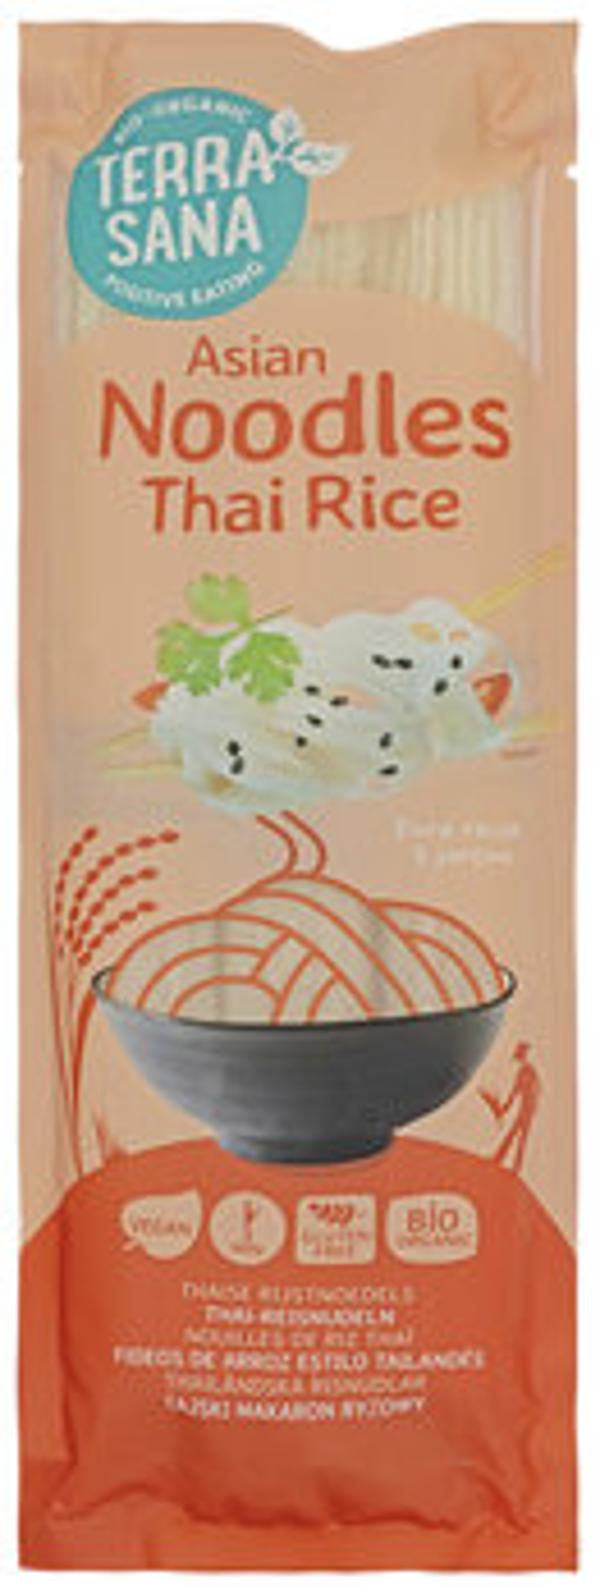 Produktfoto zu Thai-Reisnudeln 250g